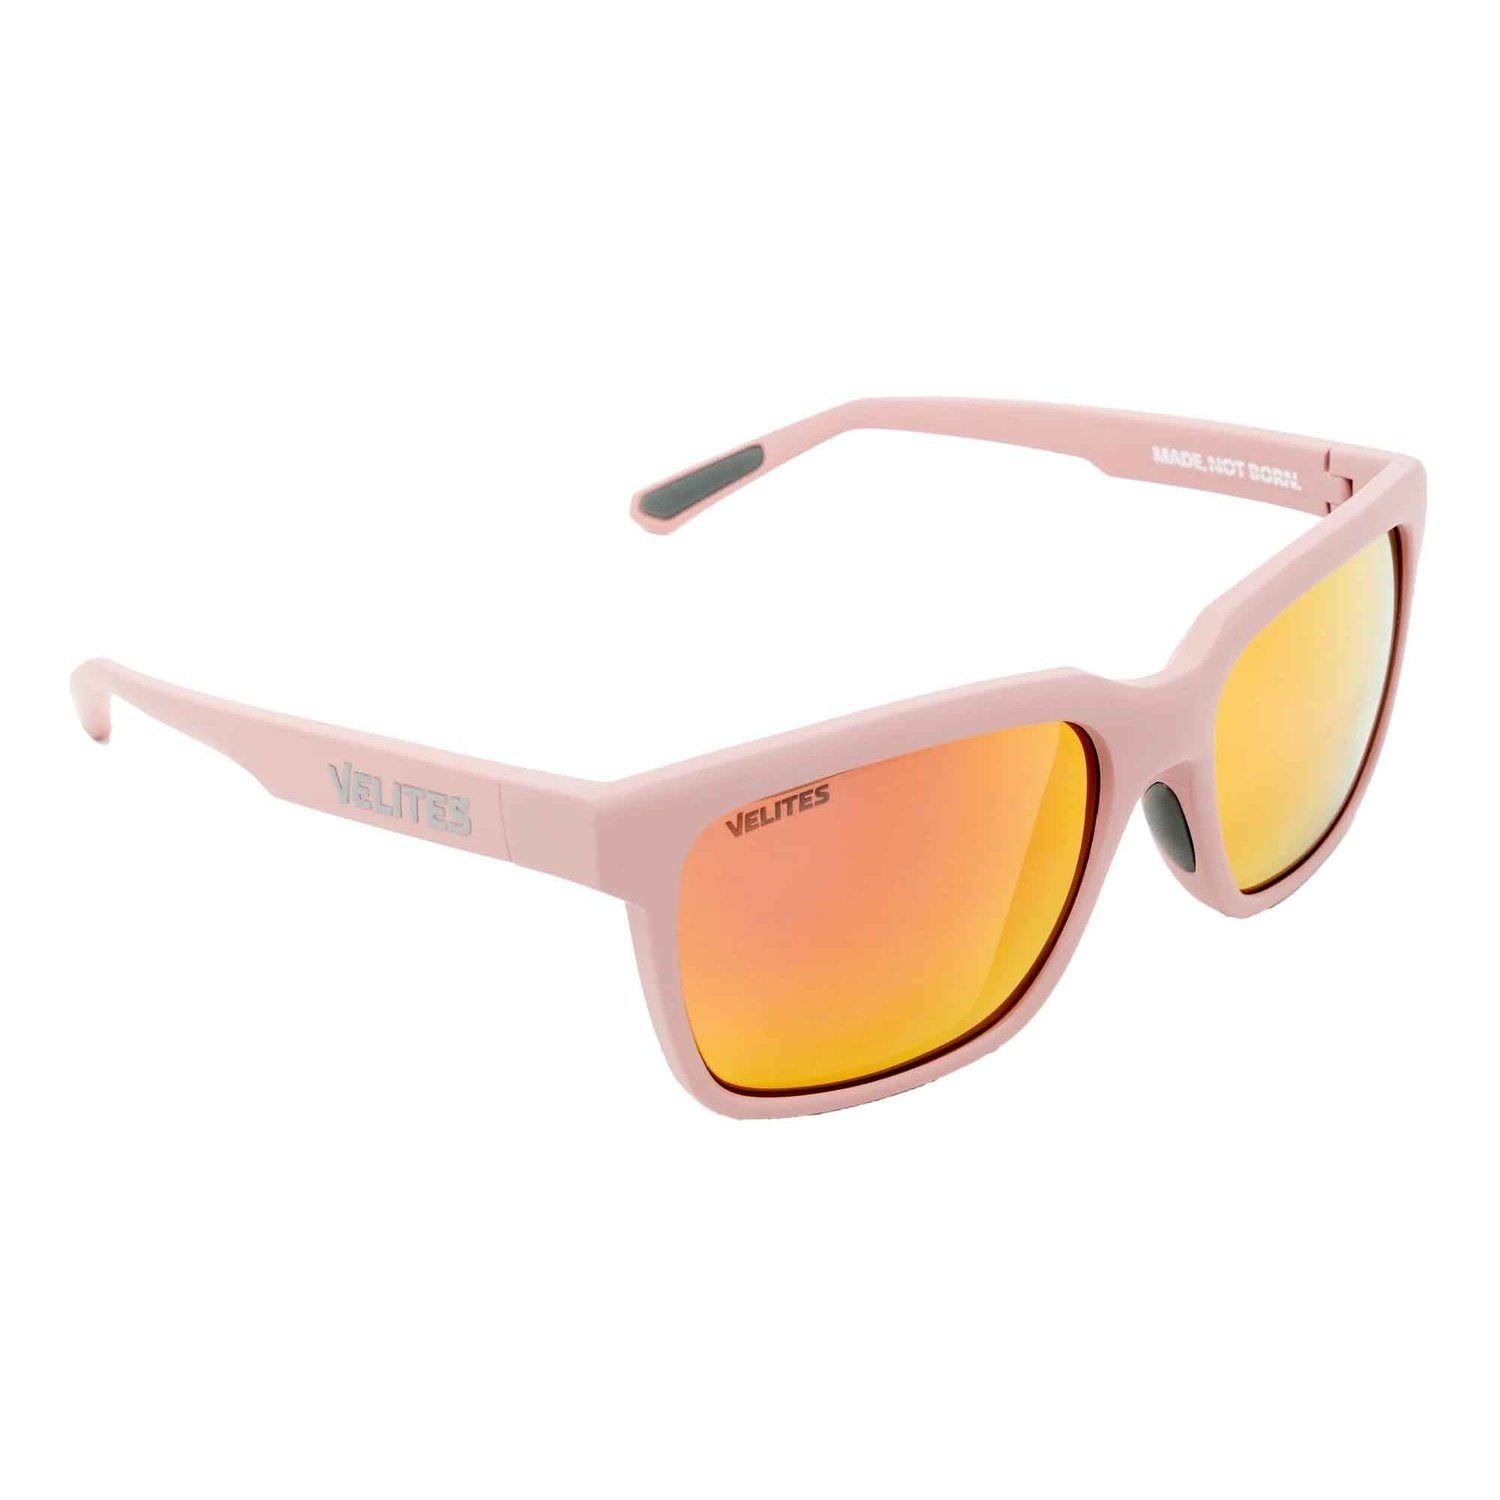 Velites Sonnenbrille "Urban Sport" Pink/Rosegold kaufen bei HighPowered.ch